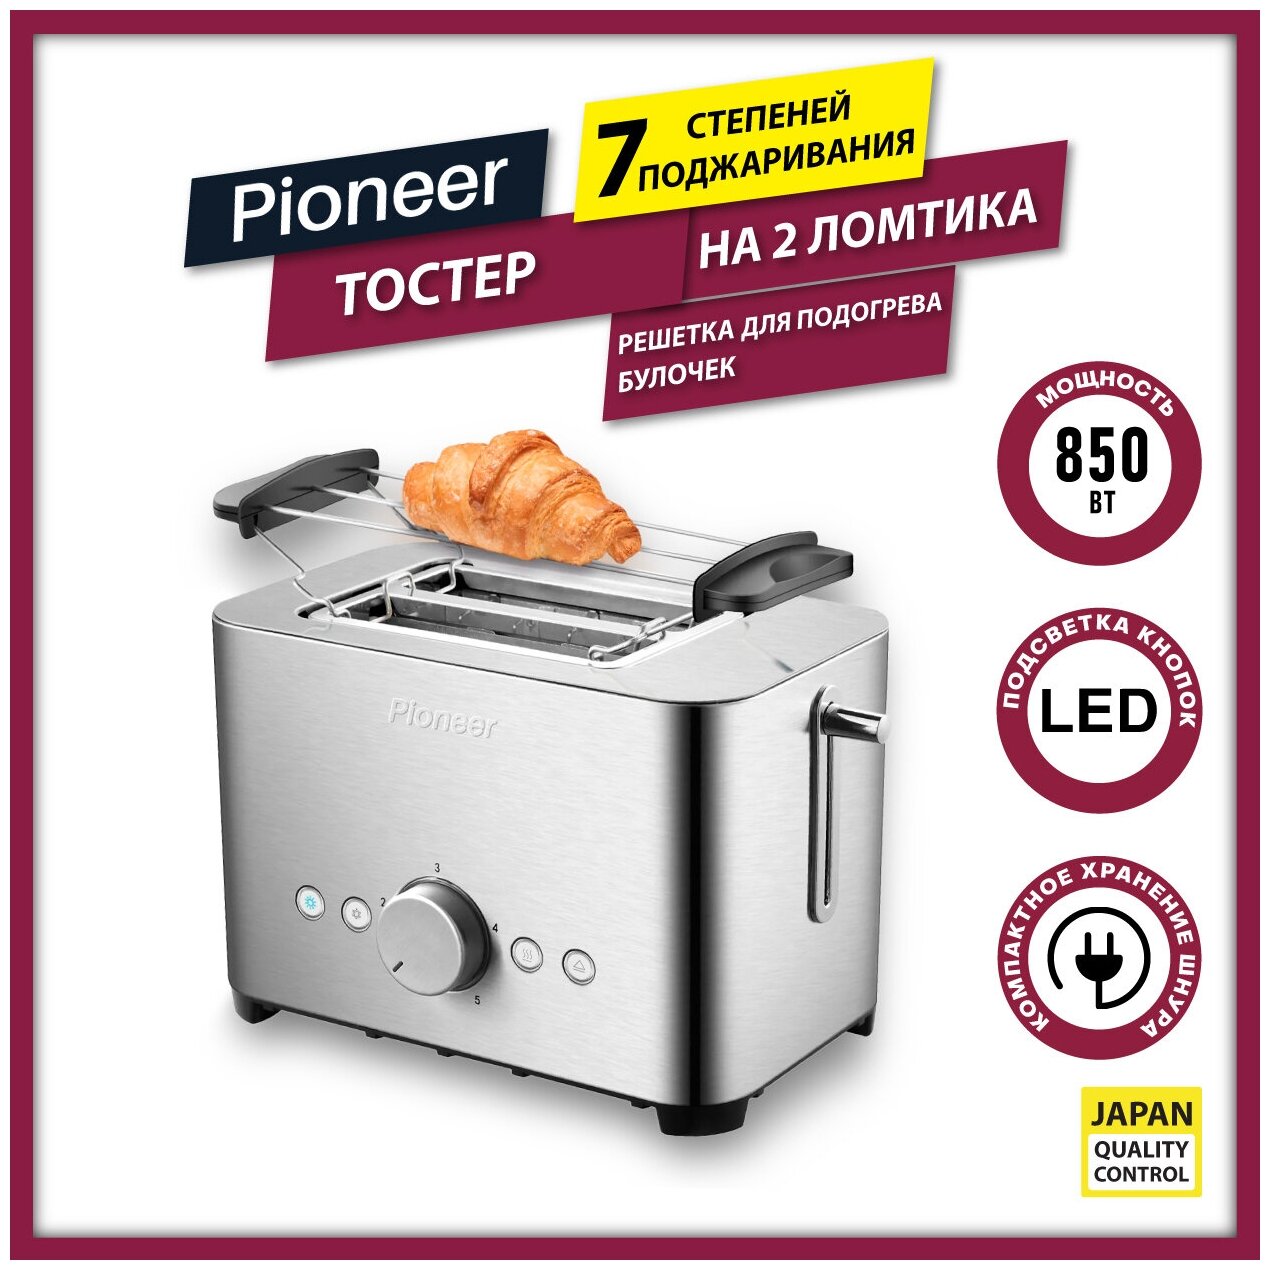 Тостер Pioneer на 2 тоста, 7 уровней поджаривания, функции подогрева и размораживания, решетка для подогрева булочек, 850 Вт